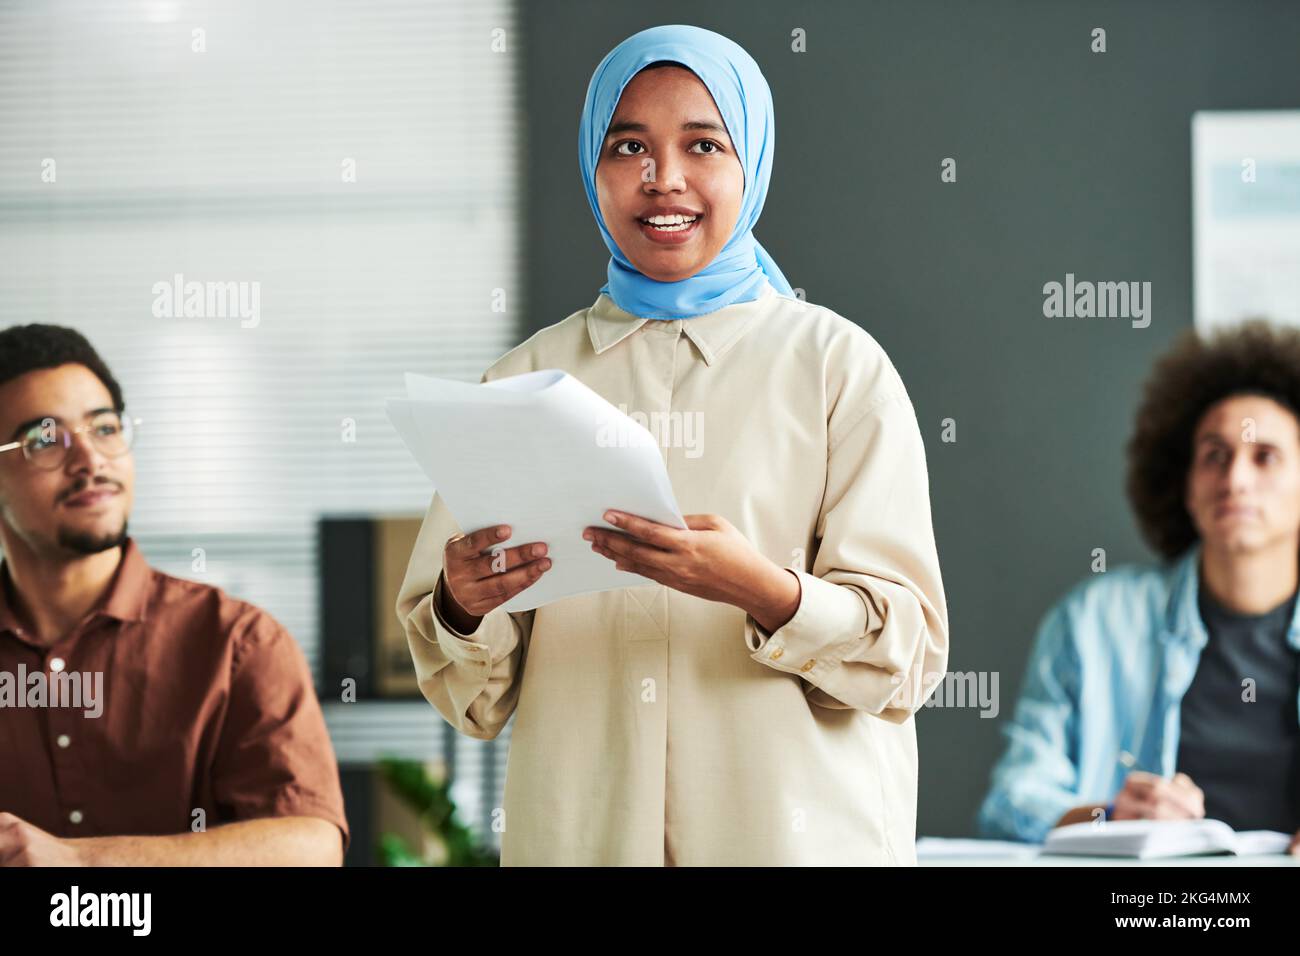 Junge selbstbewusste muslimische Sprecherin in blauem Hijab, die auf einem Seminar Rede hält oder Bericht erstattet, während sie sich gegen zwei interkulturelle Männer stellt Stockfoto